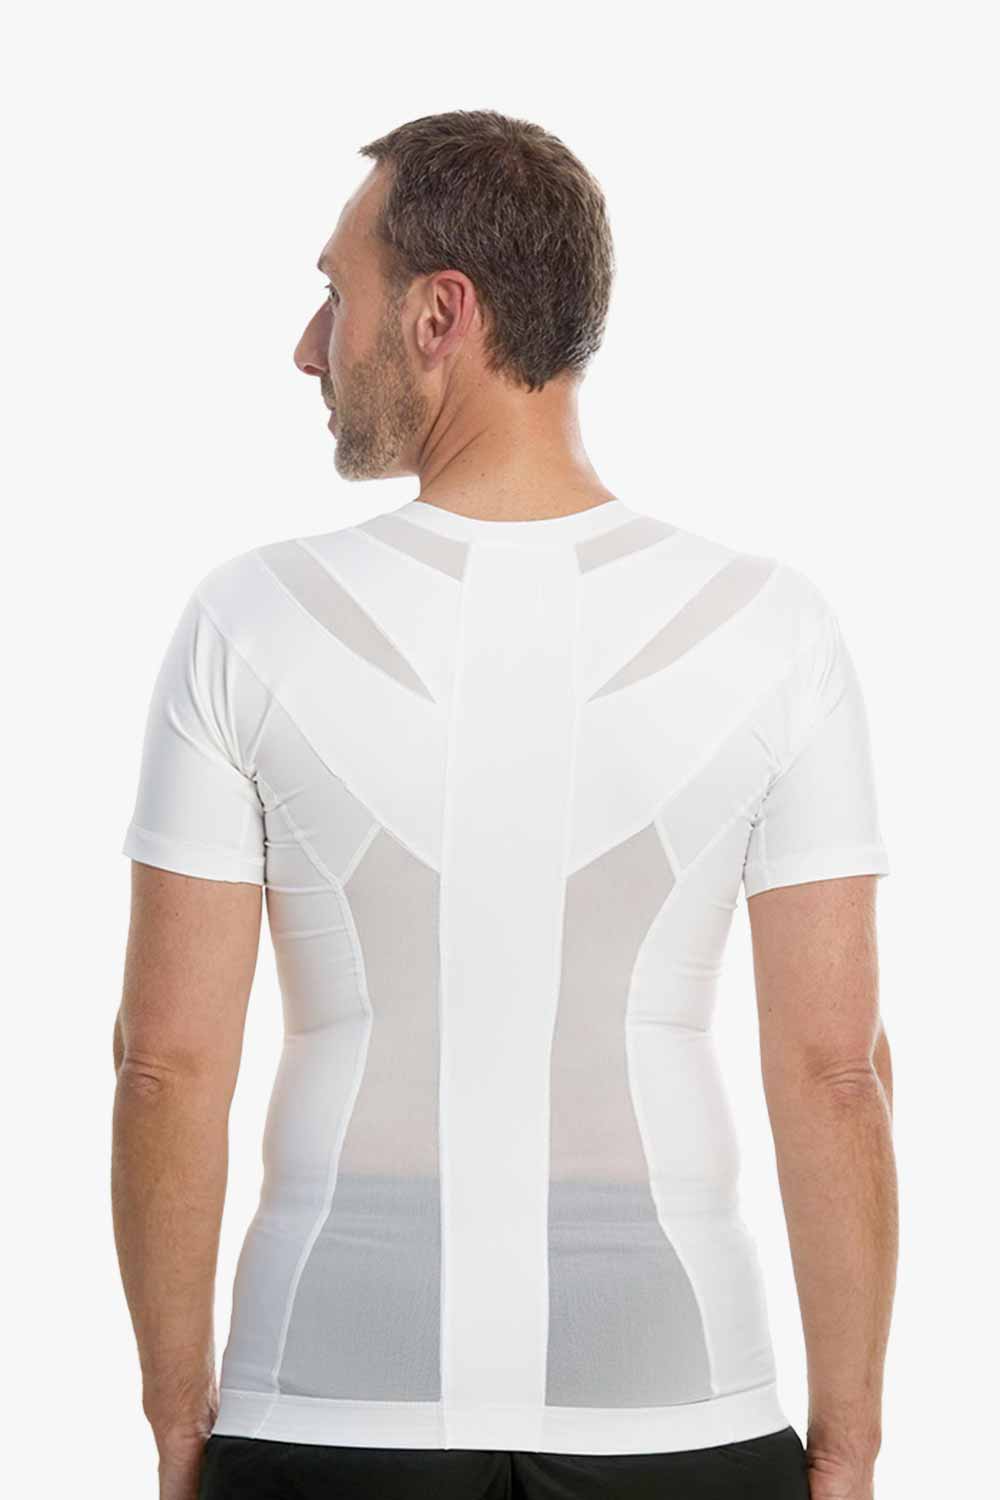 Men's Posture Shirt™ Zipper - Hvid